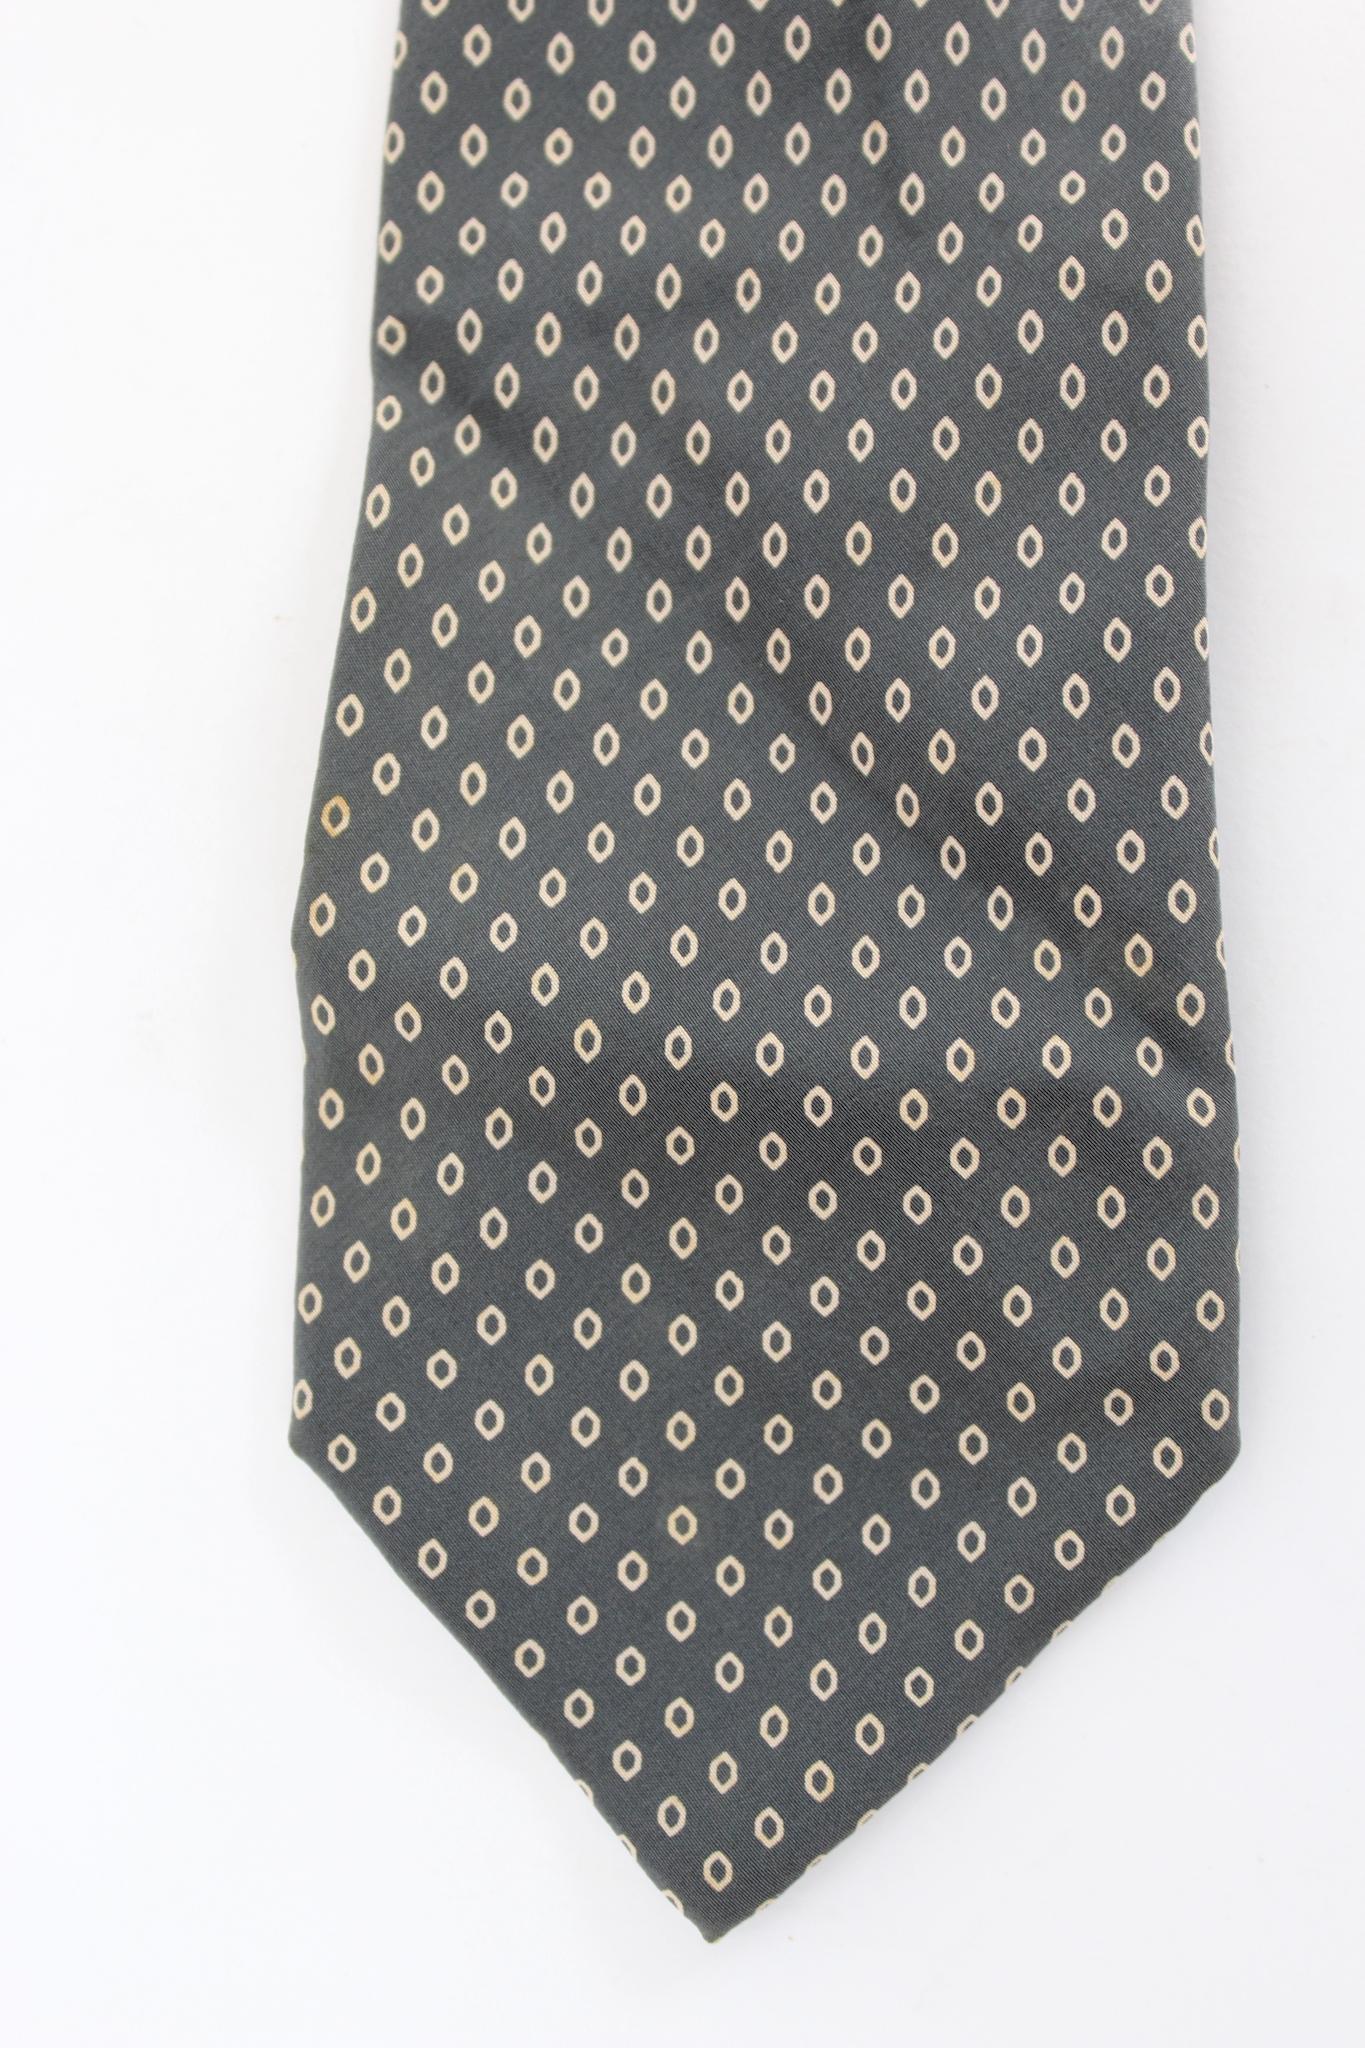 Yves Saint Laurent klassische geometrische Krawatte aus den 90ern. Graue und beige Farbe, 100% Seide. Hergestellt in Italien.

Länge: 147 cm
Breite: 8 cm